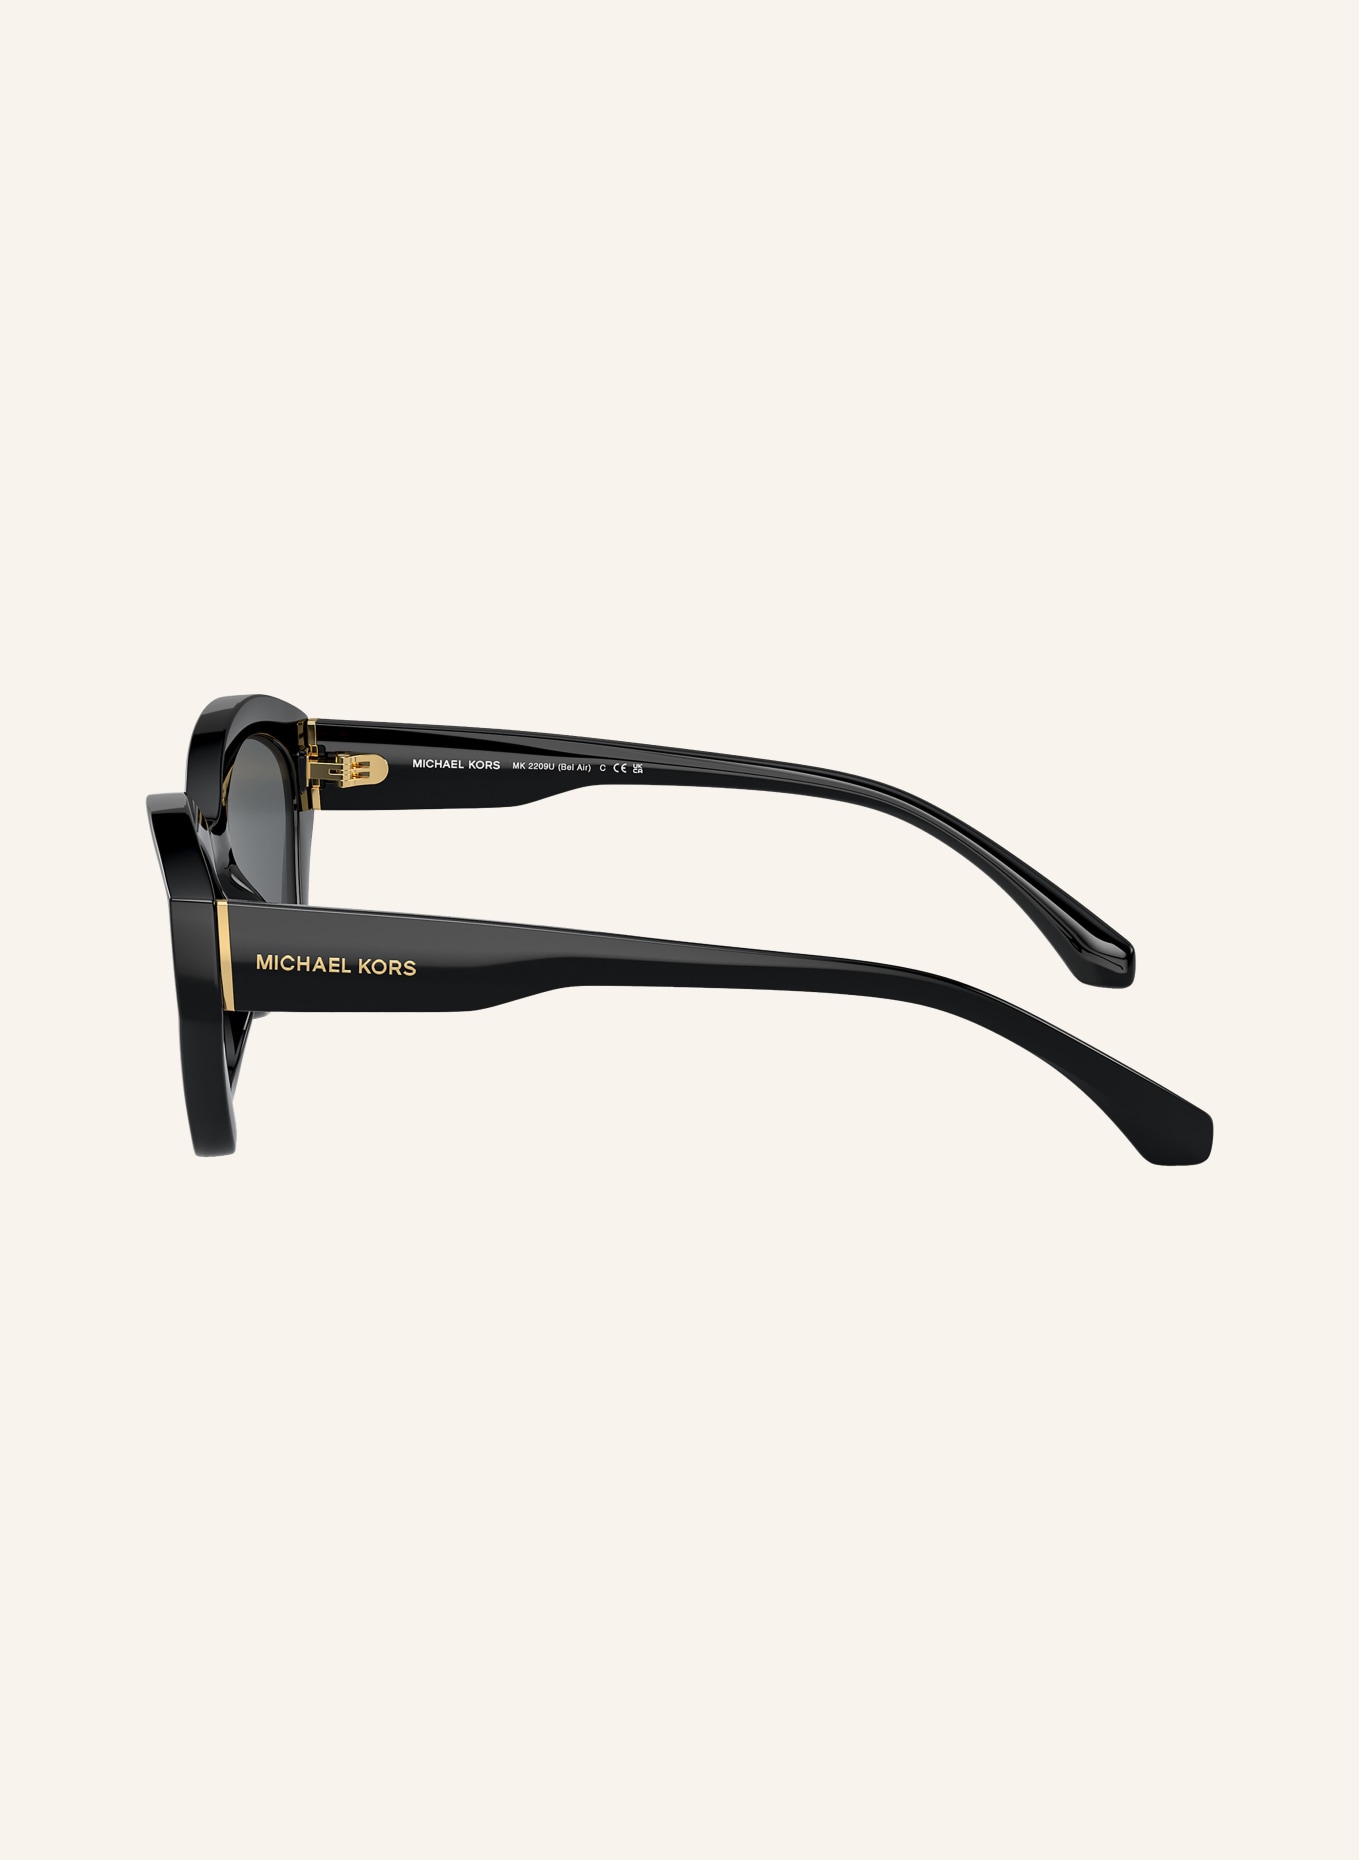 MICHAEL KORS Sunglasses MK2209U BEL AIR, Color: 300587 - BLACK/GRAY (Image 3)